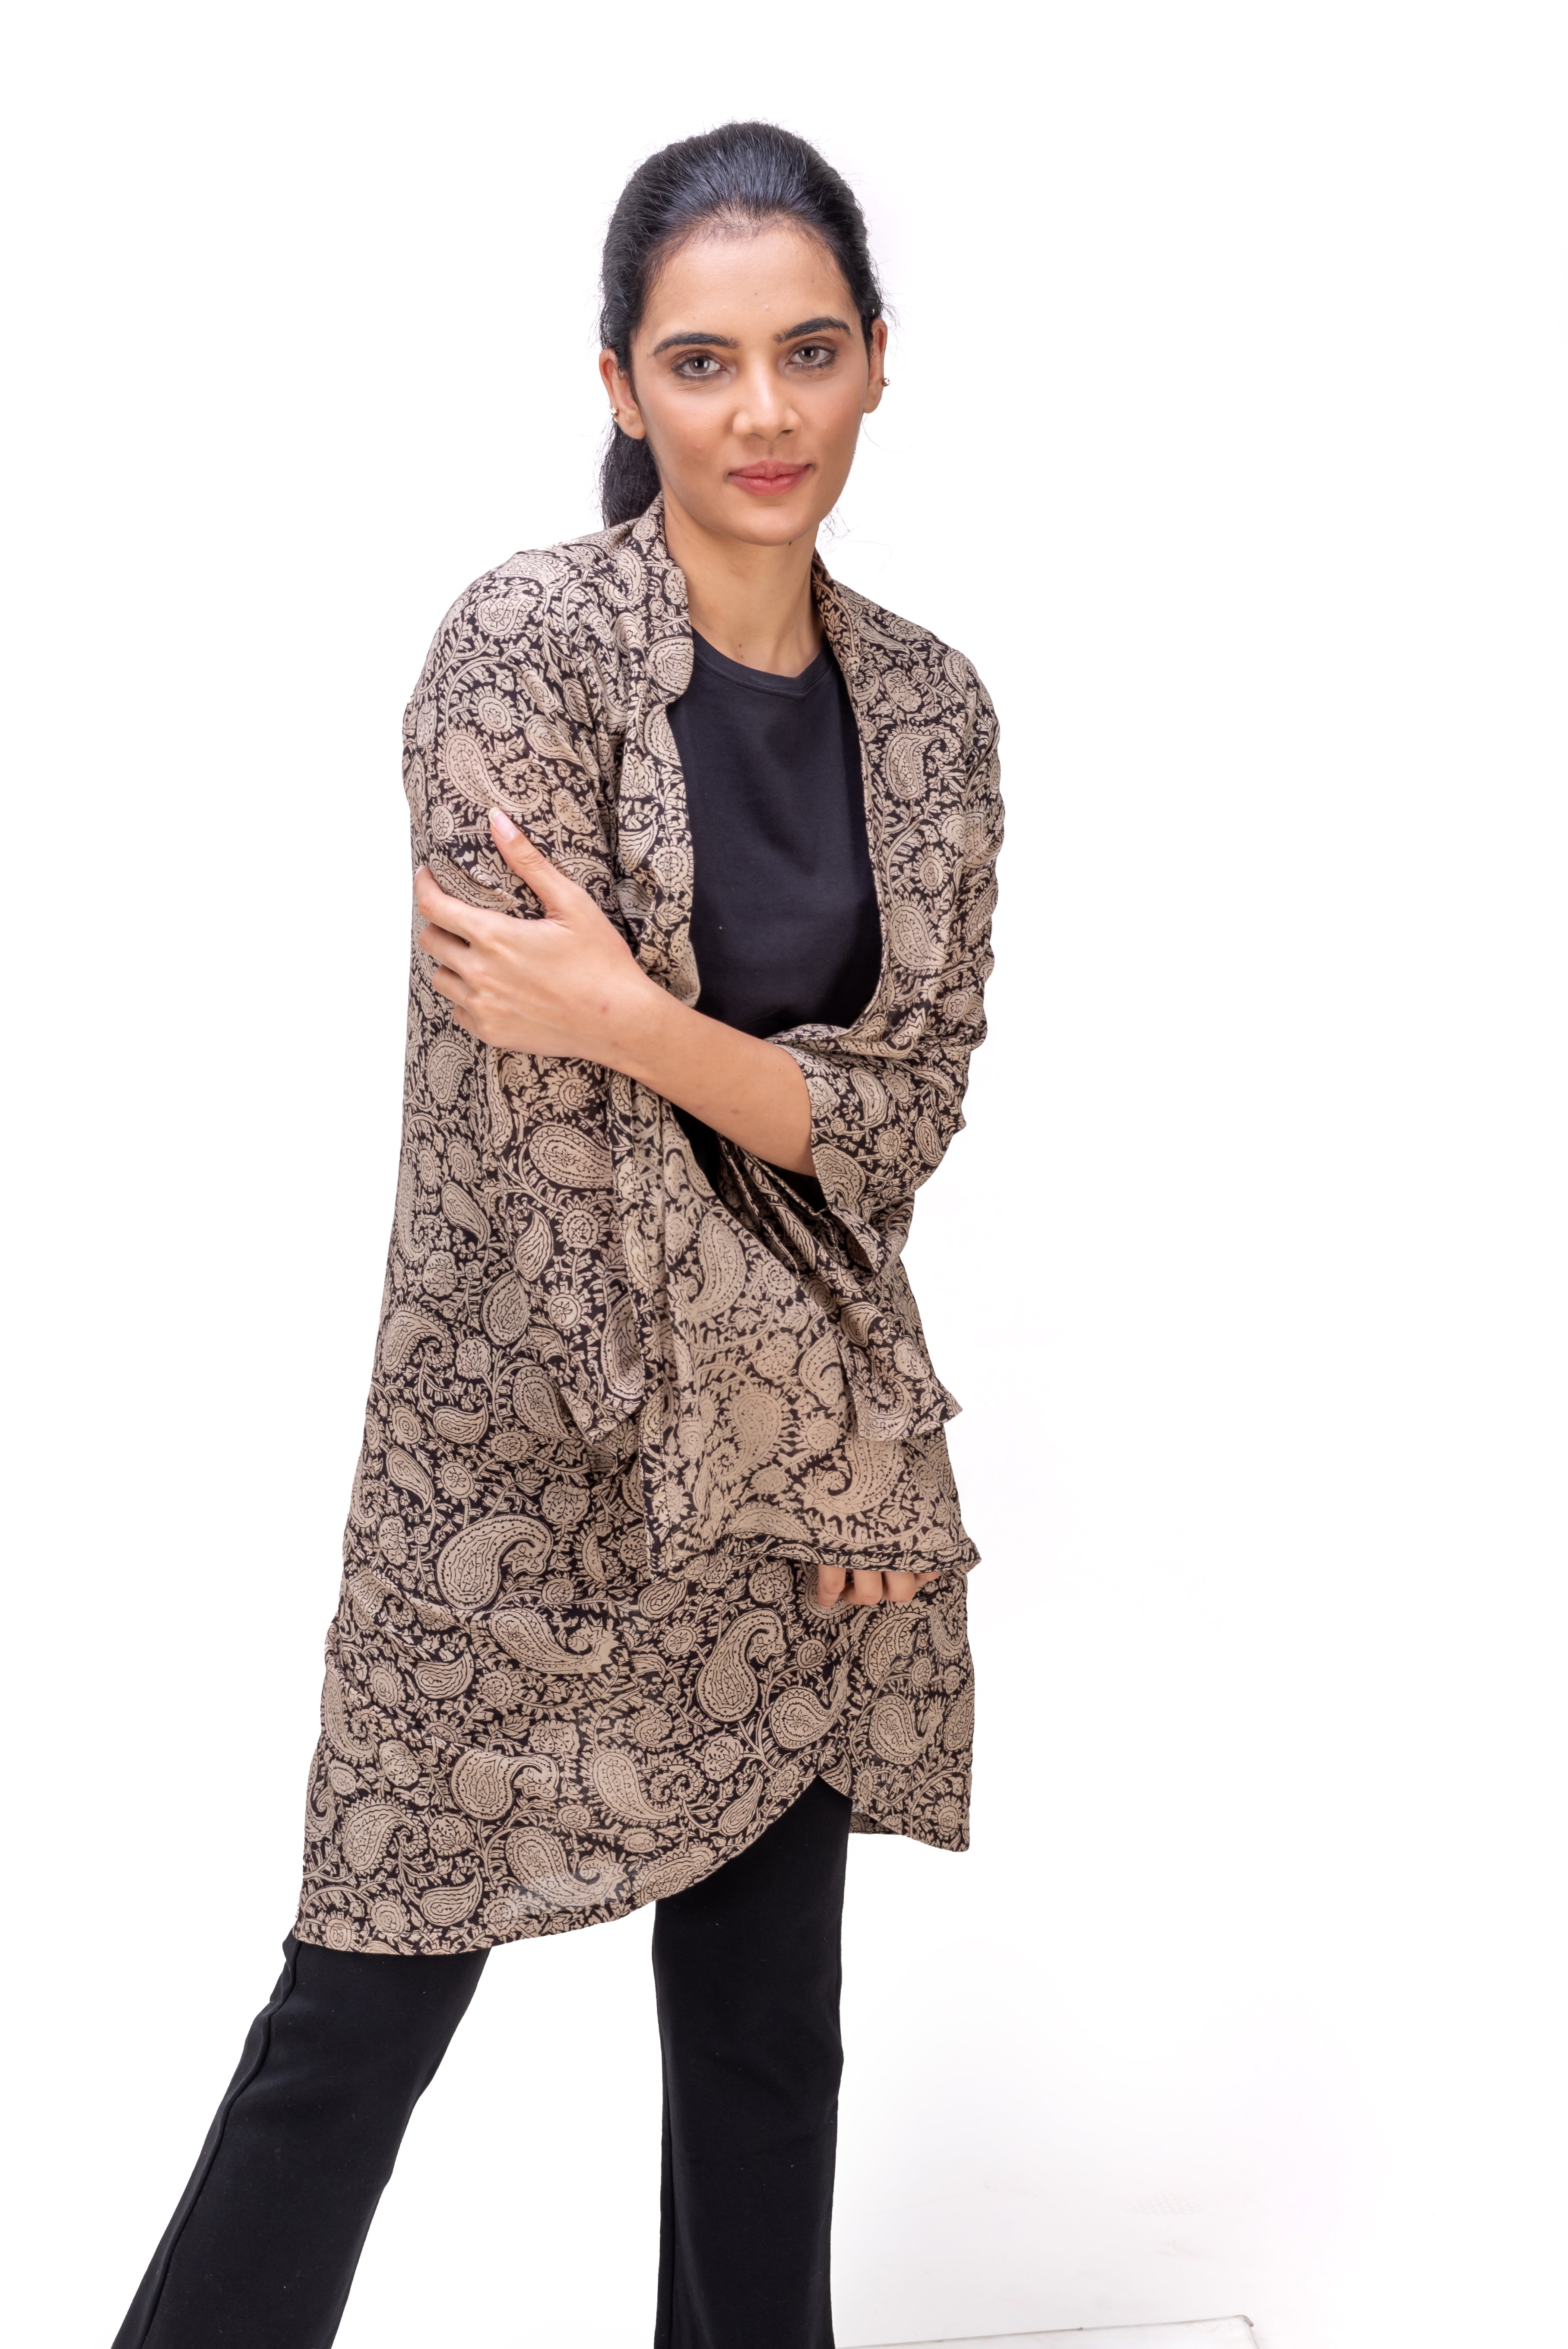 513-117 Whitelotus "Kimono" Women's coat